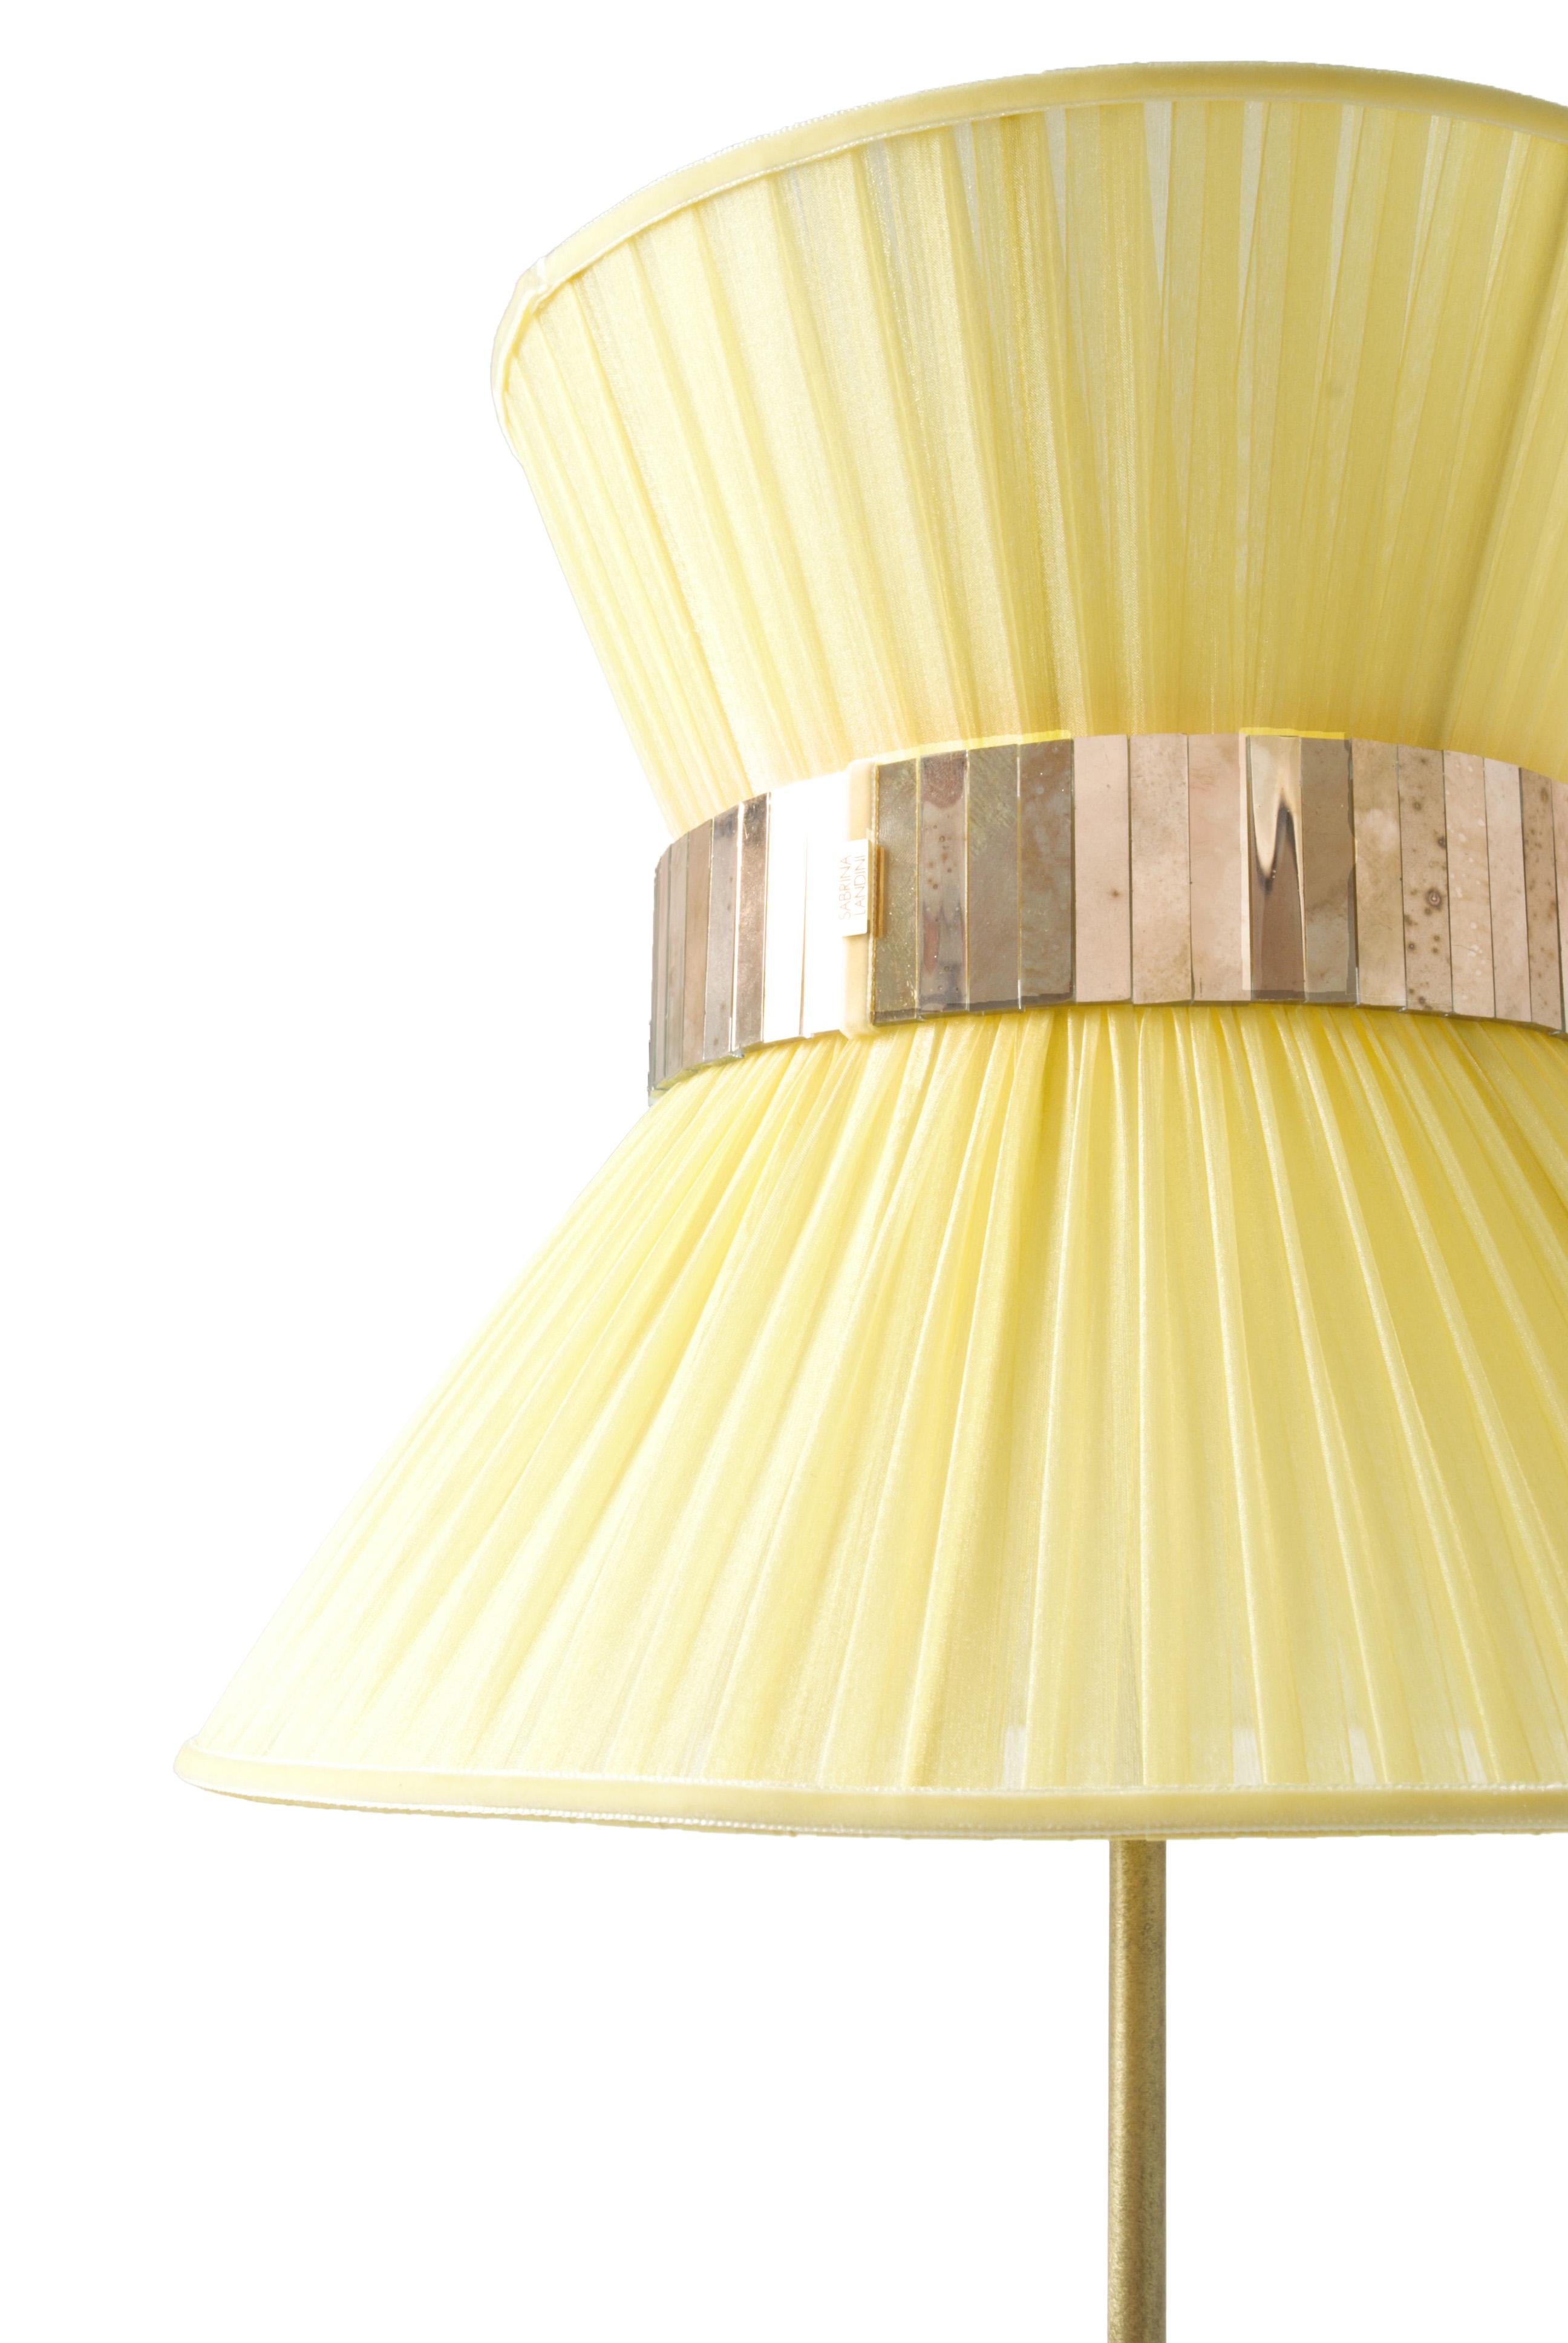 Tiffany, die legendäre Lampe!

Seit 20 Jahren sind wir bestrebt, Ihnen einzigartige Collection'S in Bezug auf Design und Qualität anzubieten. Alle unsere kultigen Produkte werden in unserem Atelier in der Toskana, Italien, nach einem uralten